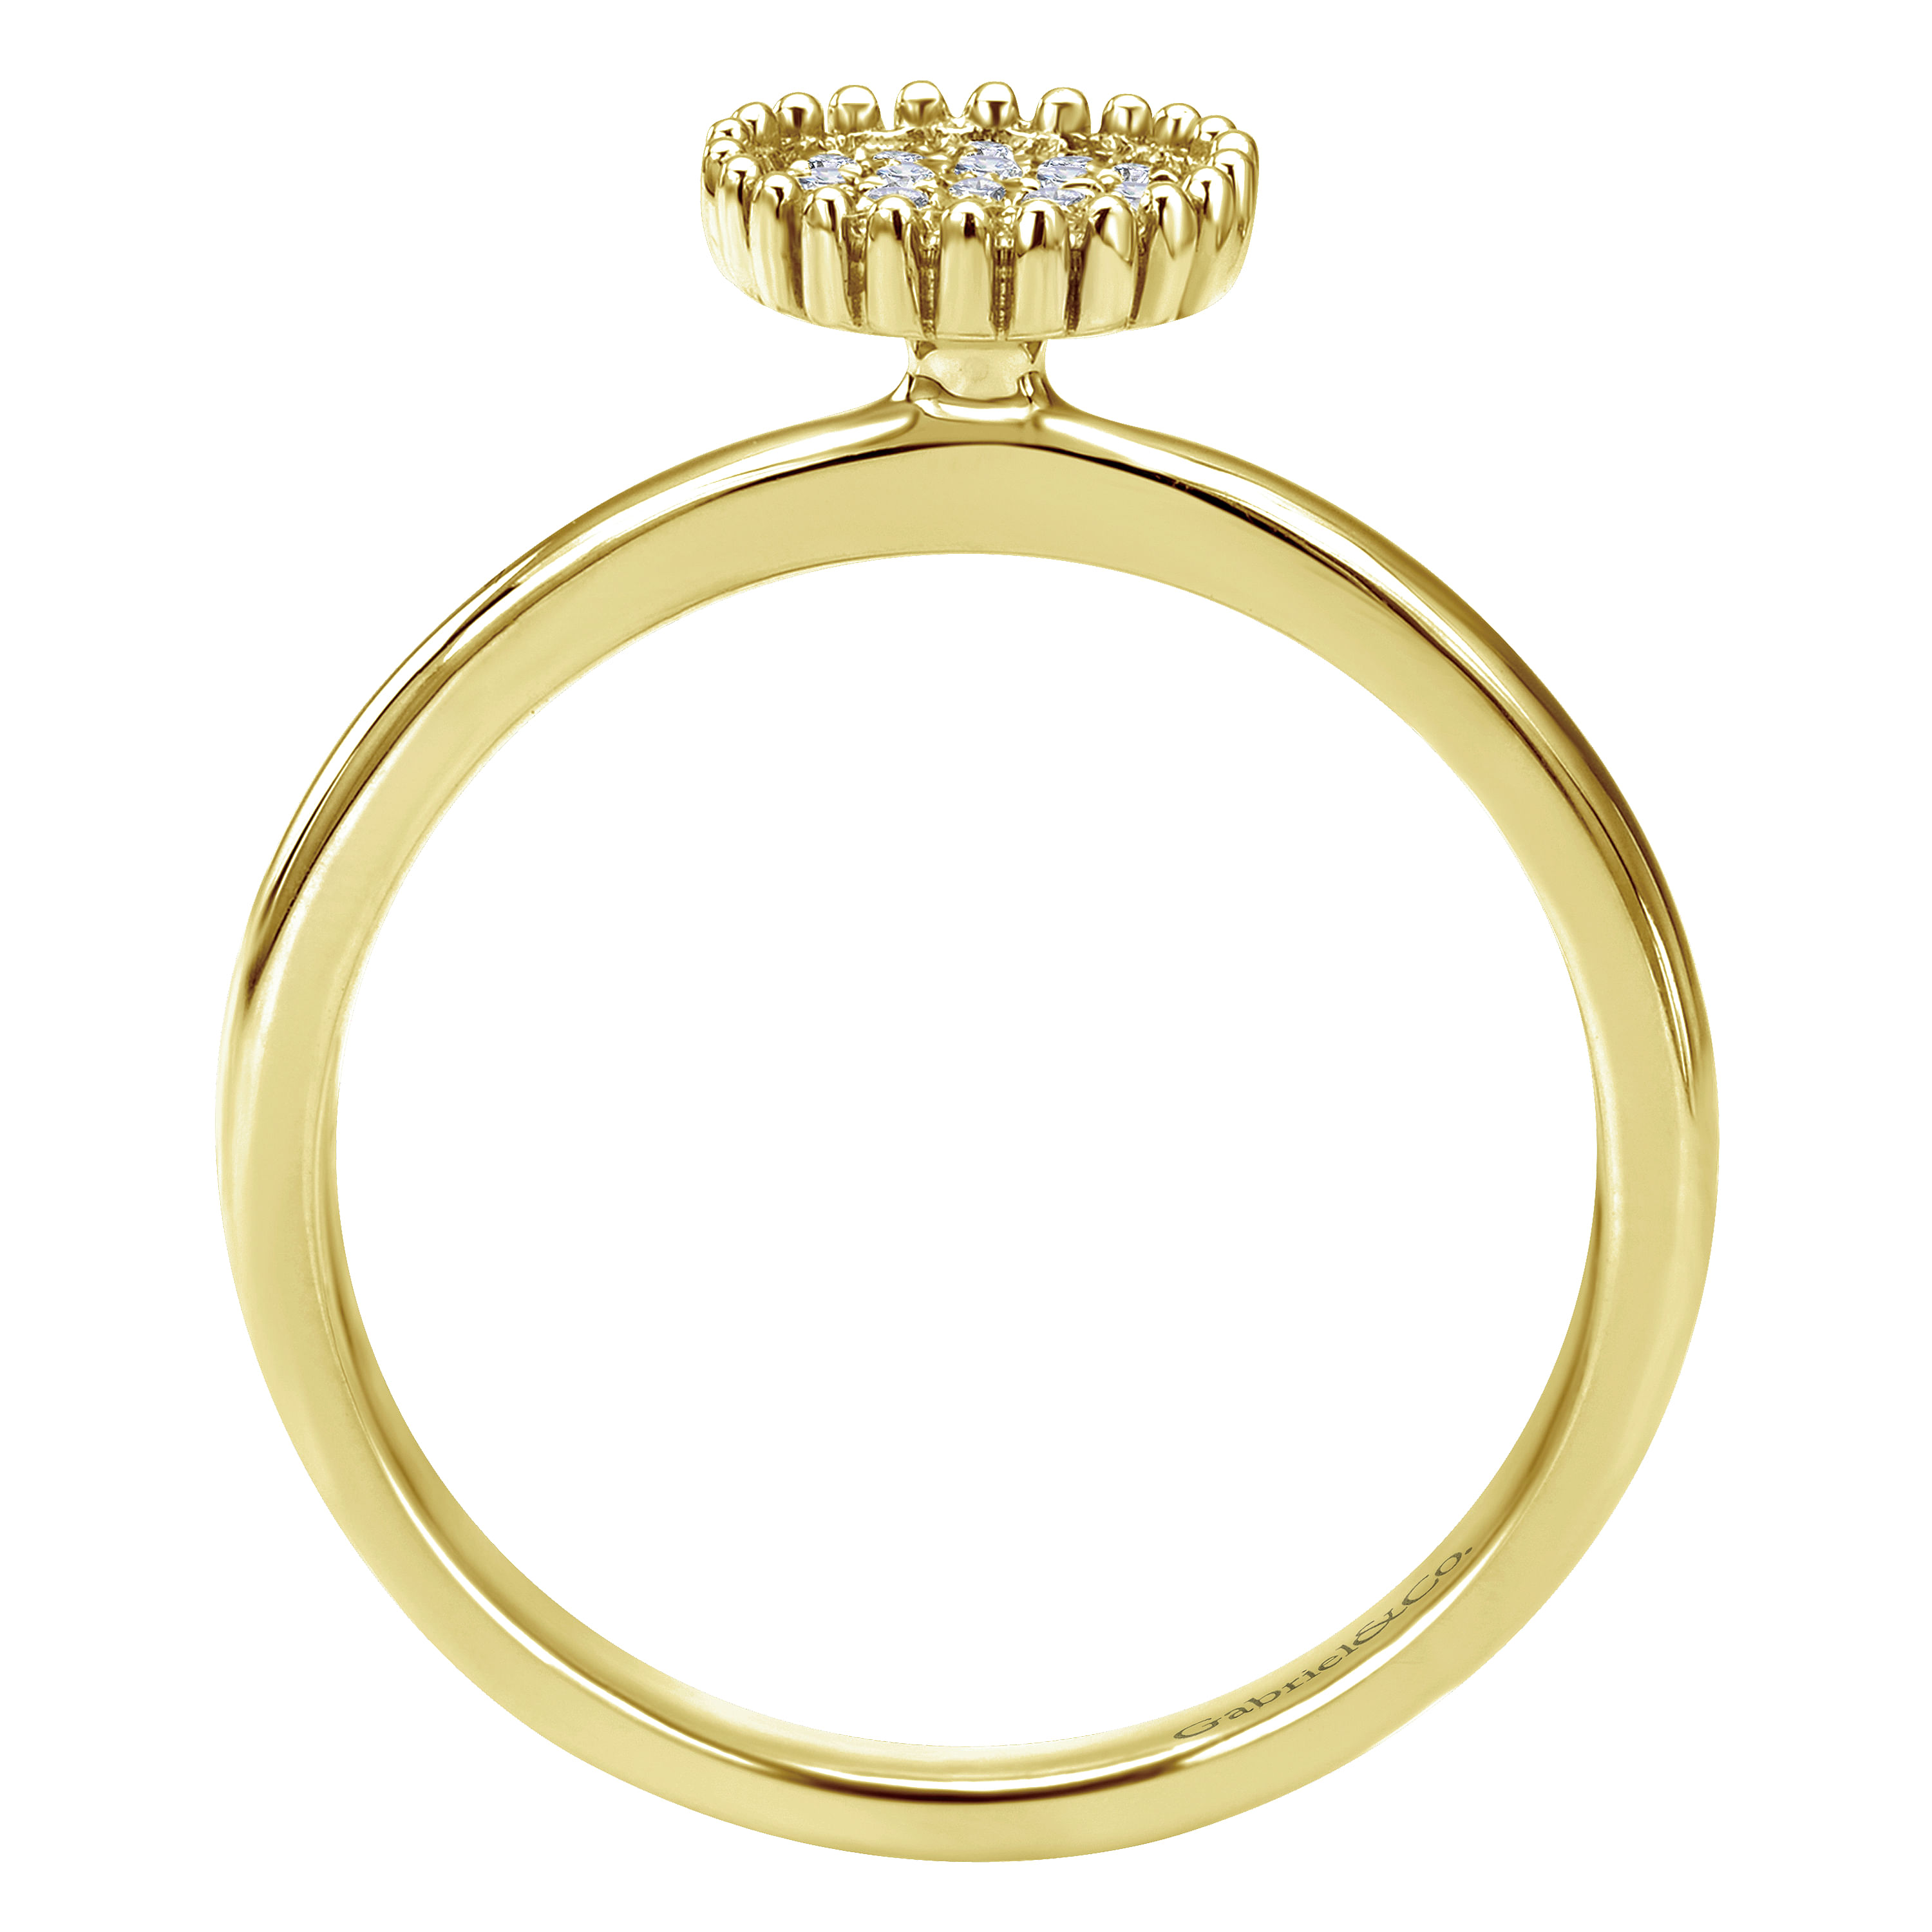 14K Yellow Gold Beaded Round Diamond Pavé Ladies Ring